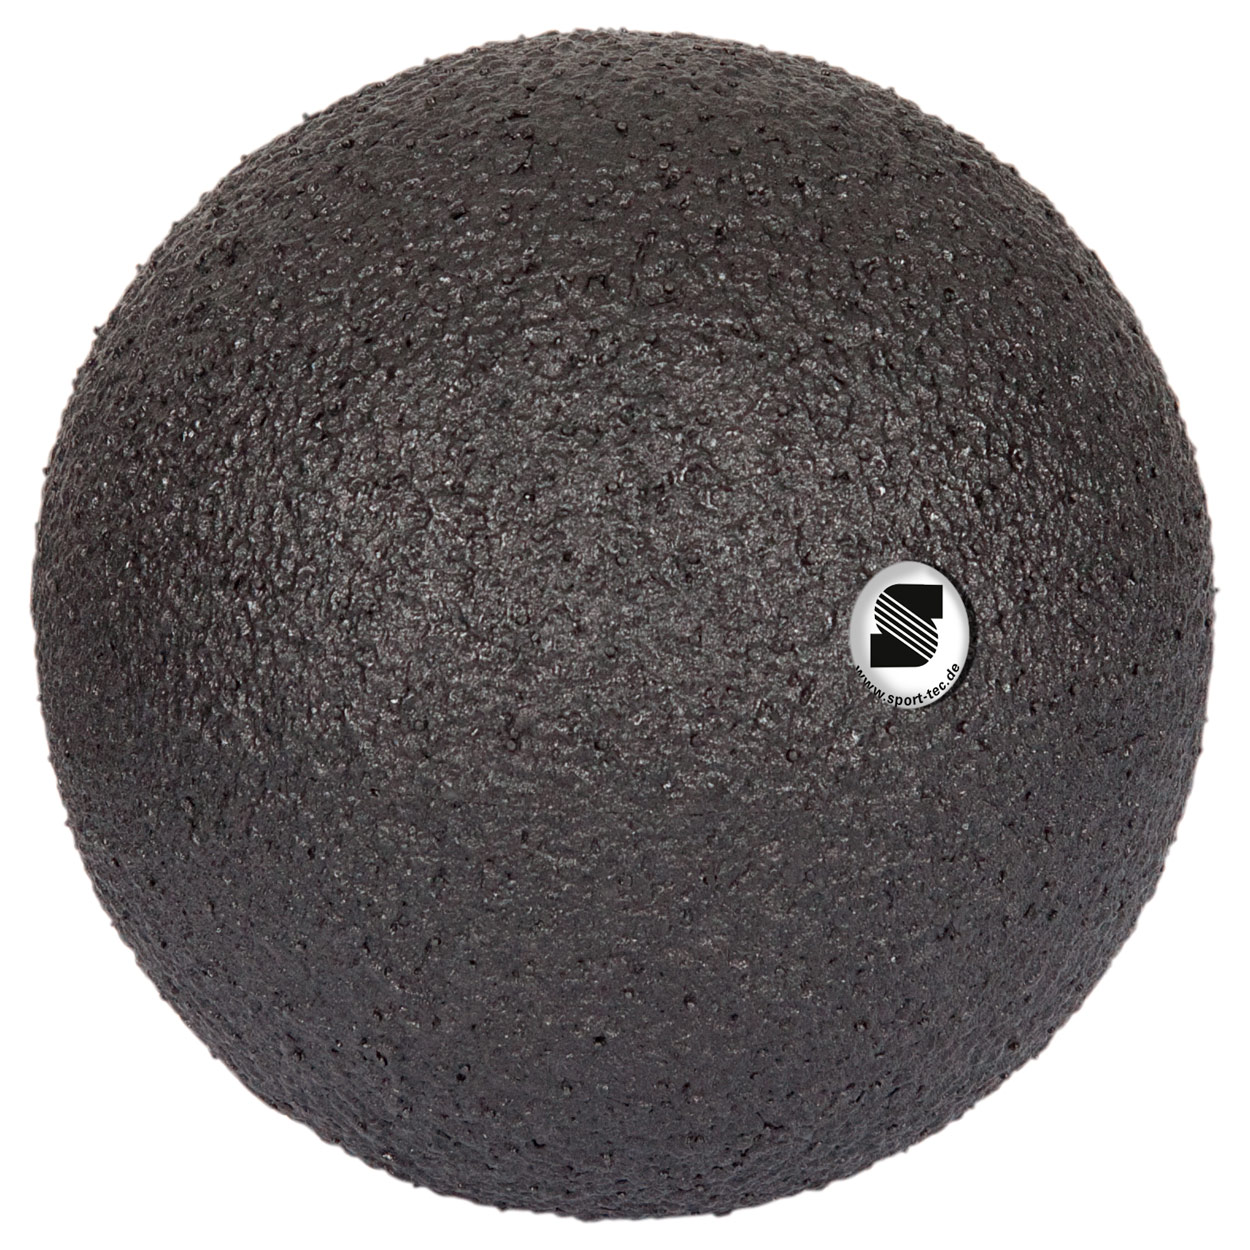 Blackroll Ball ORIGINAL Faszienball Massageball Fitnessball Selbstmassage 12 cm